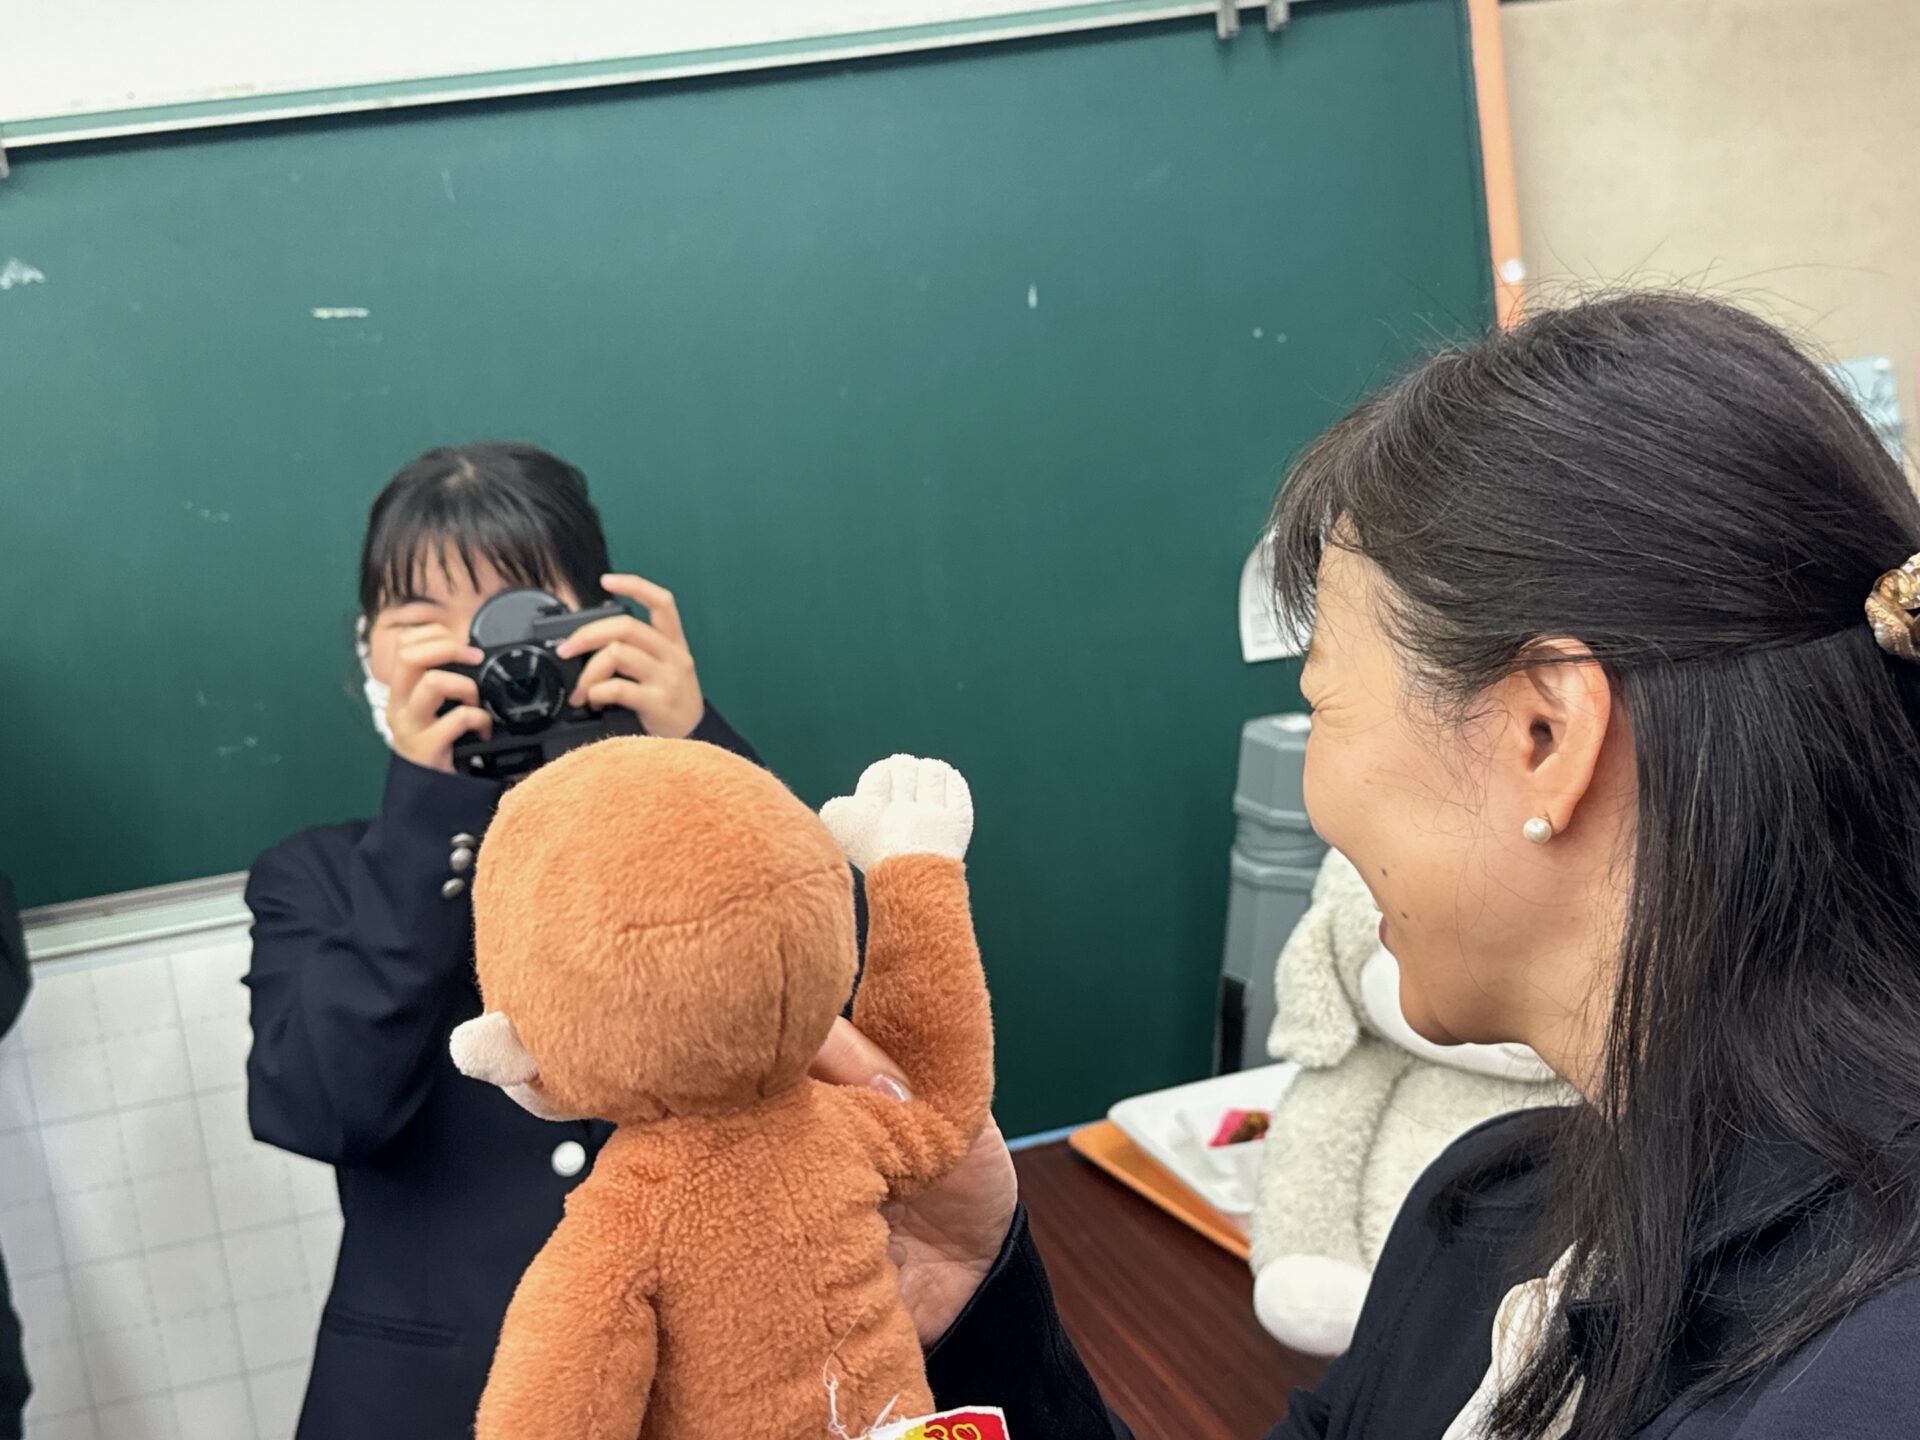 網膜投影カメラキットを手にした女の子の前で、先生がサルのぬいぐるみを持って立っている様子をうつした写真。女の子はカメラごしにぬいぐるみをみています